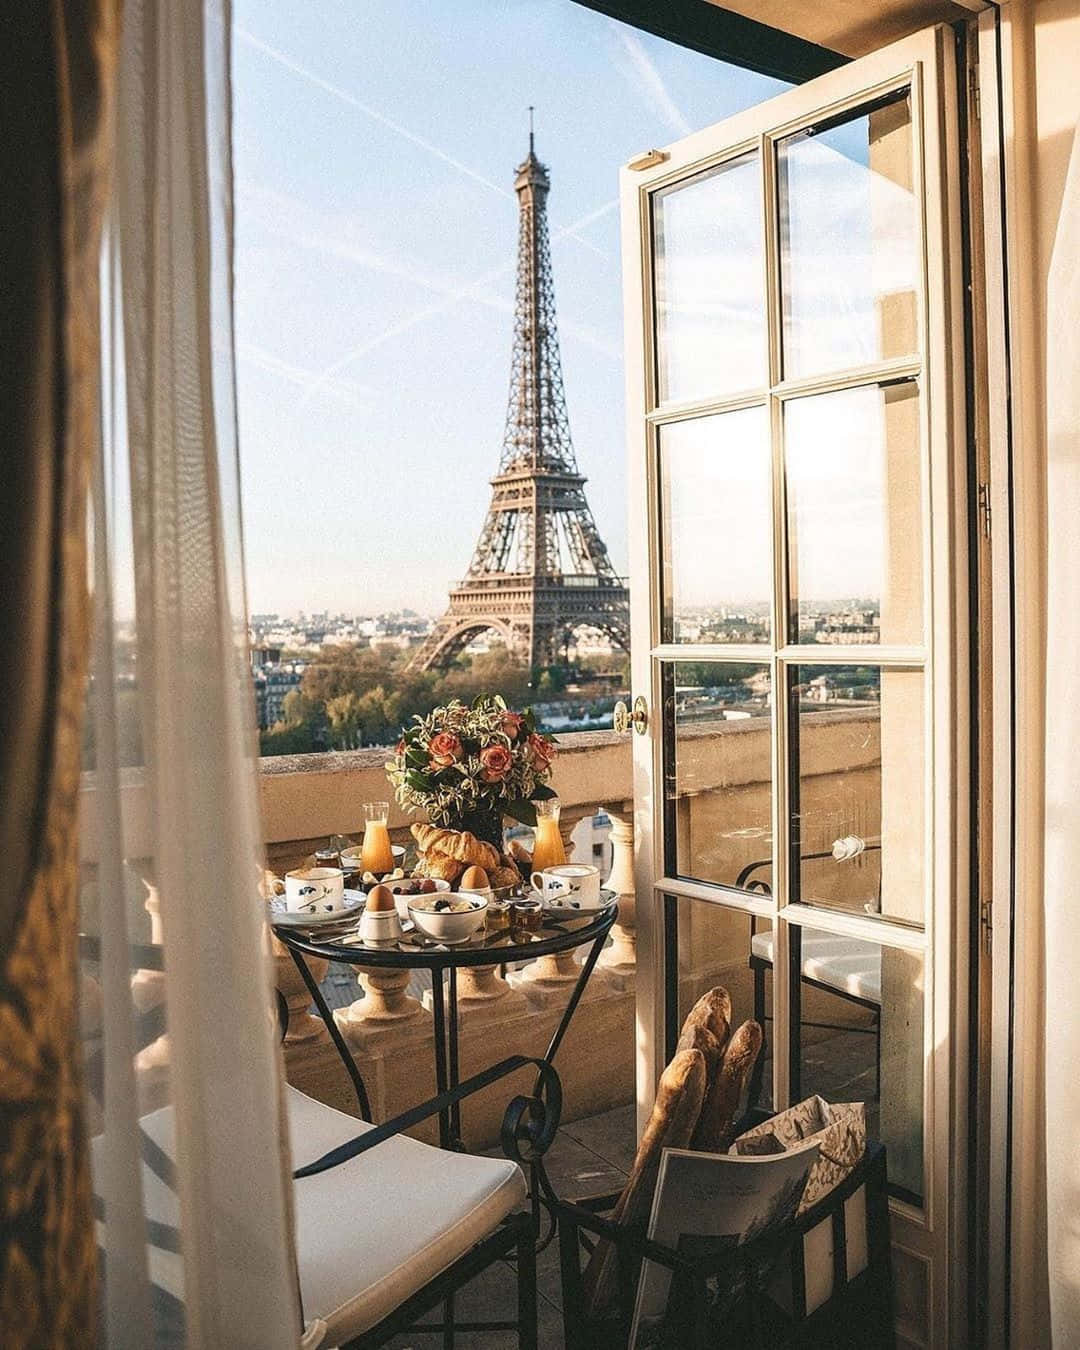 Französischesbild Vom Eiffelturm Aus Einem Fenster.